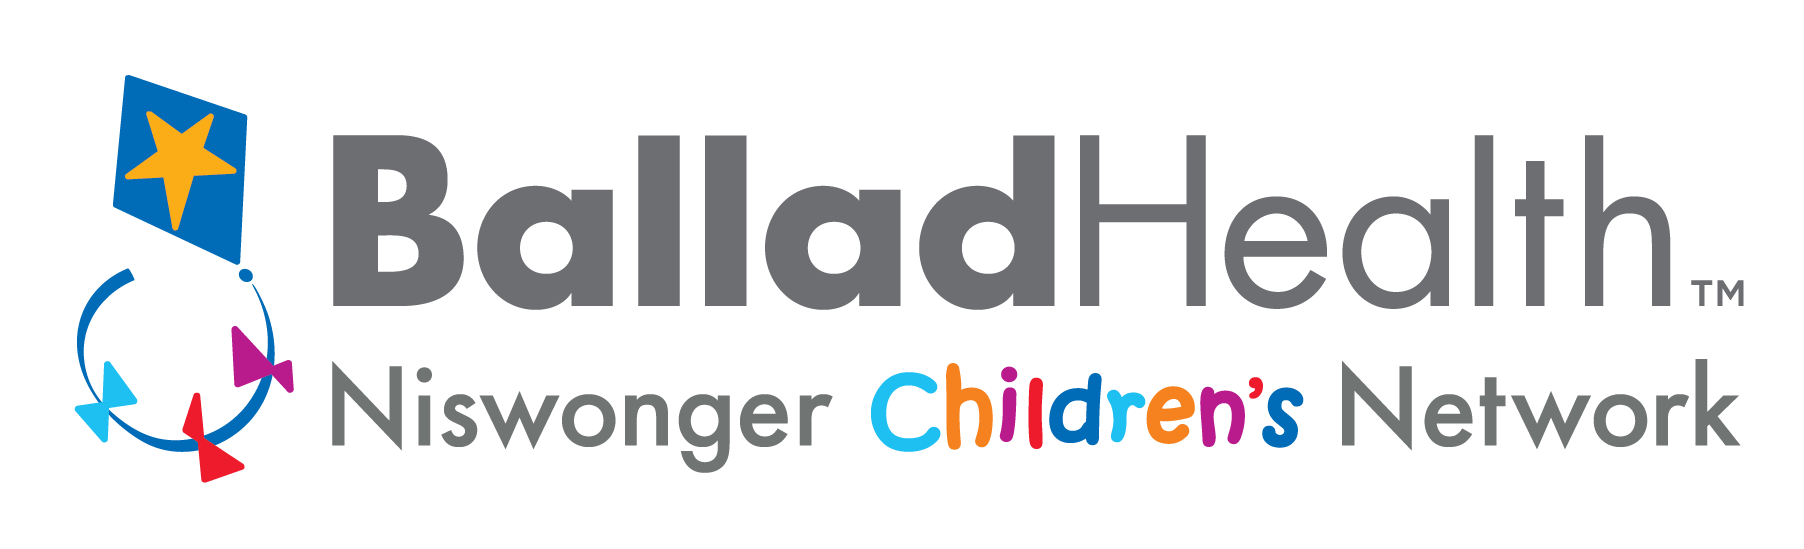 Ballad Health Niswonger Childrens Network Logo